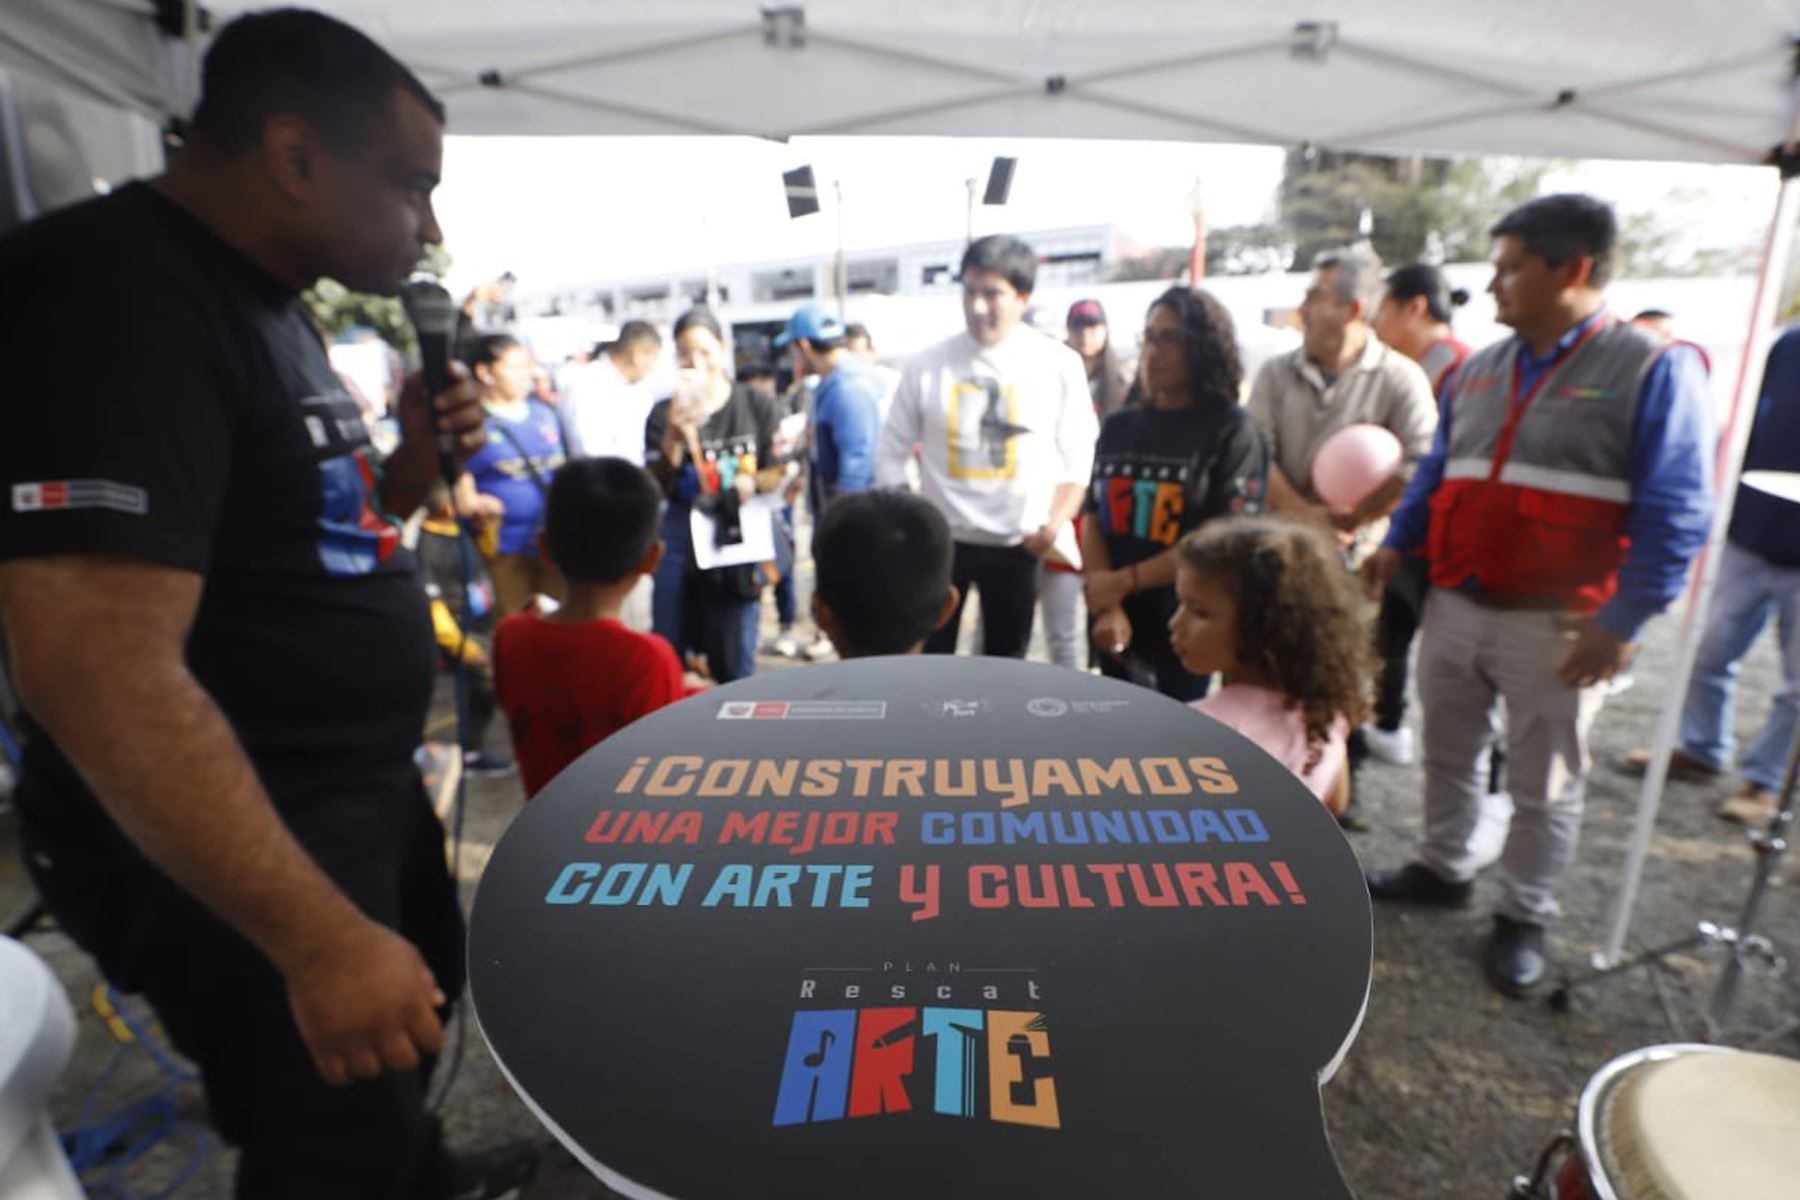 Ministra de Cultura, Leslie Urteaga realiza el lanzamiento de la la estrategia “Orquesta en el Barrio”, que forma parte del Plan RescatARTE, con el fin de prevenir la violencia en San Juan de Lurigancho.
Foto: Mincul